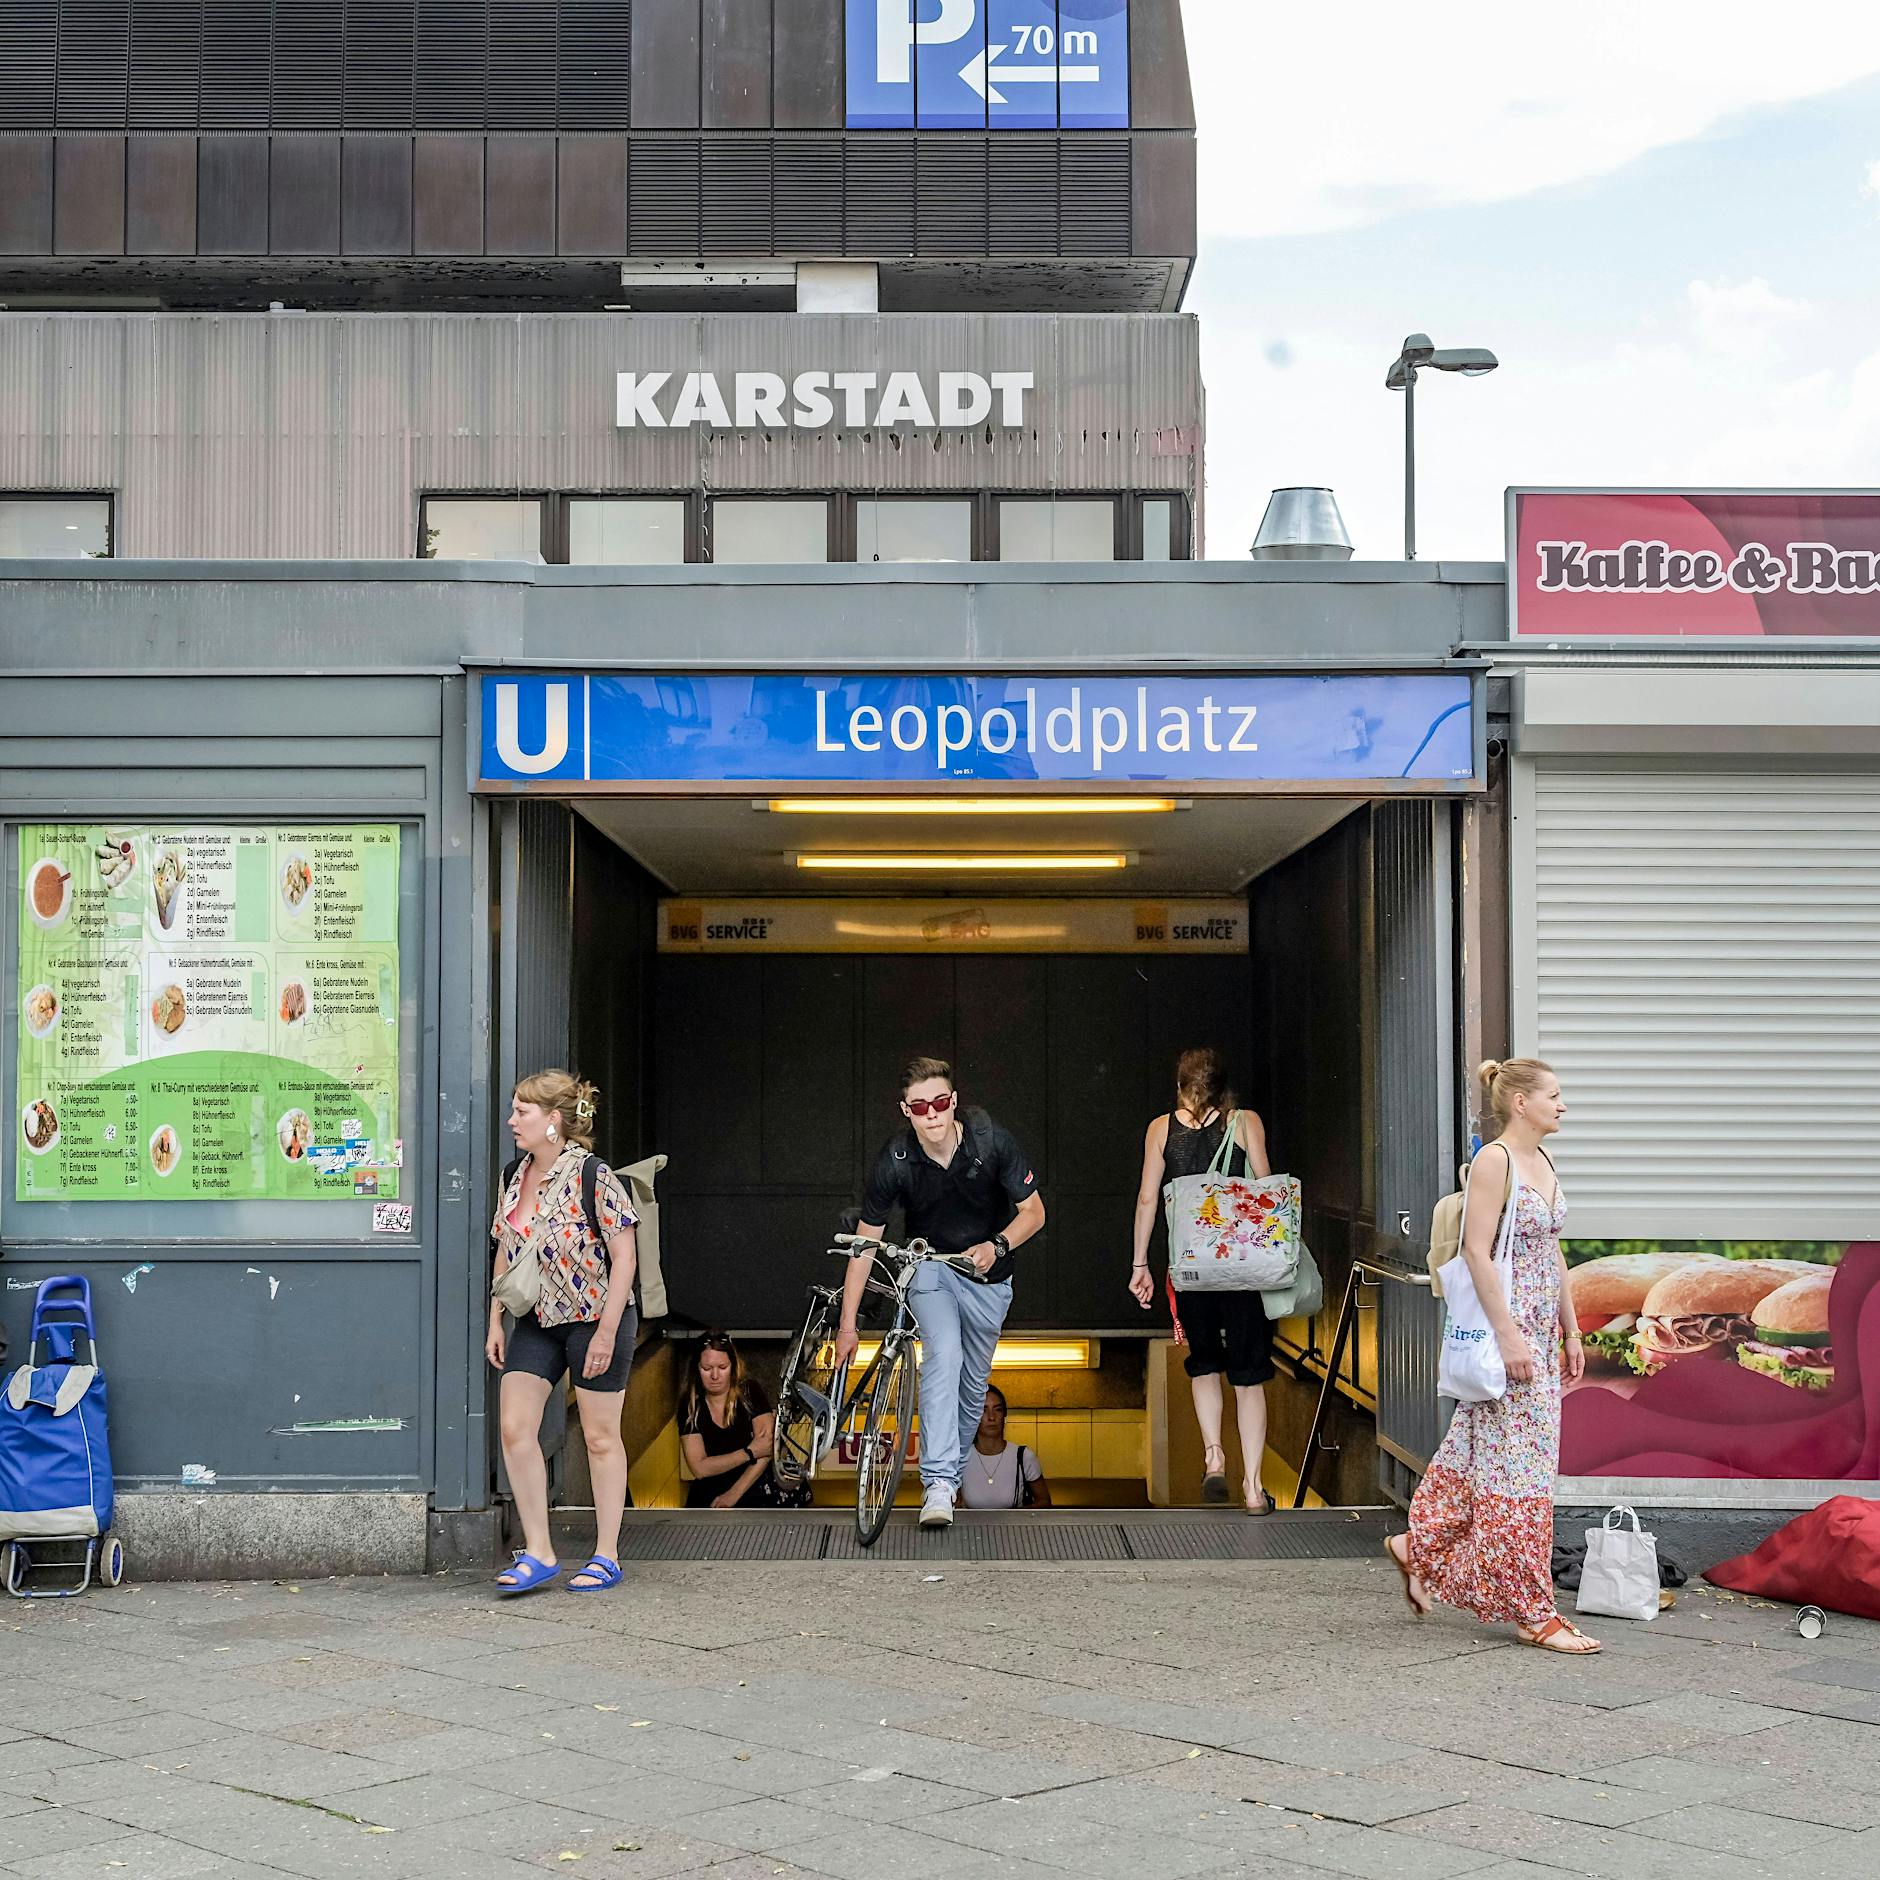 U-Bahnhof Leopoldplatz: Duo greift BVG-Mitarbeiter an